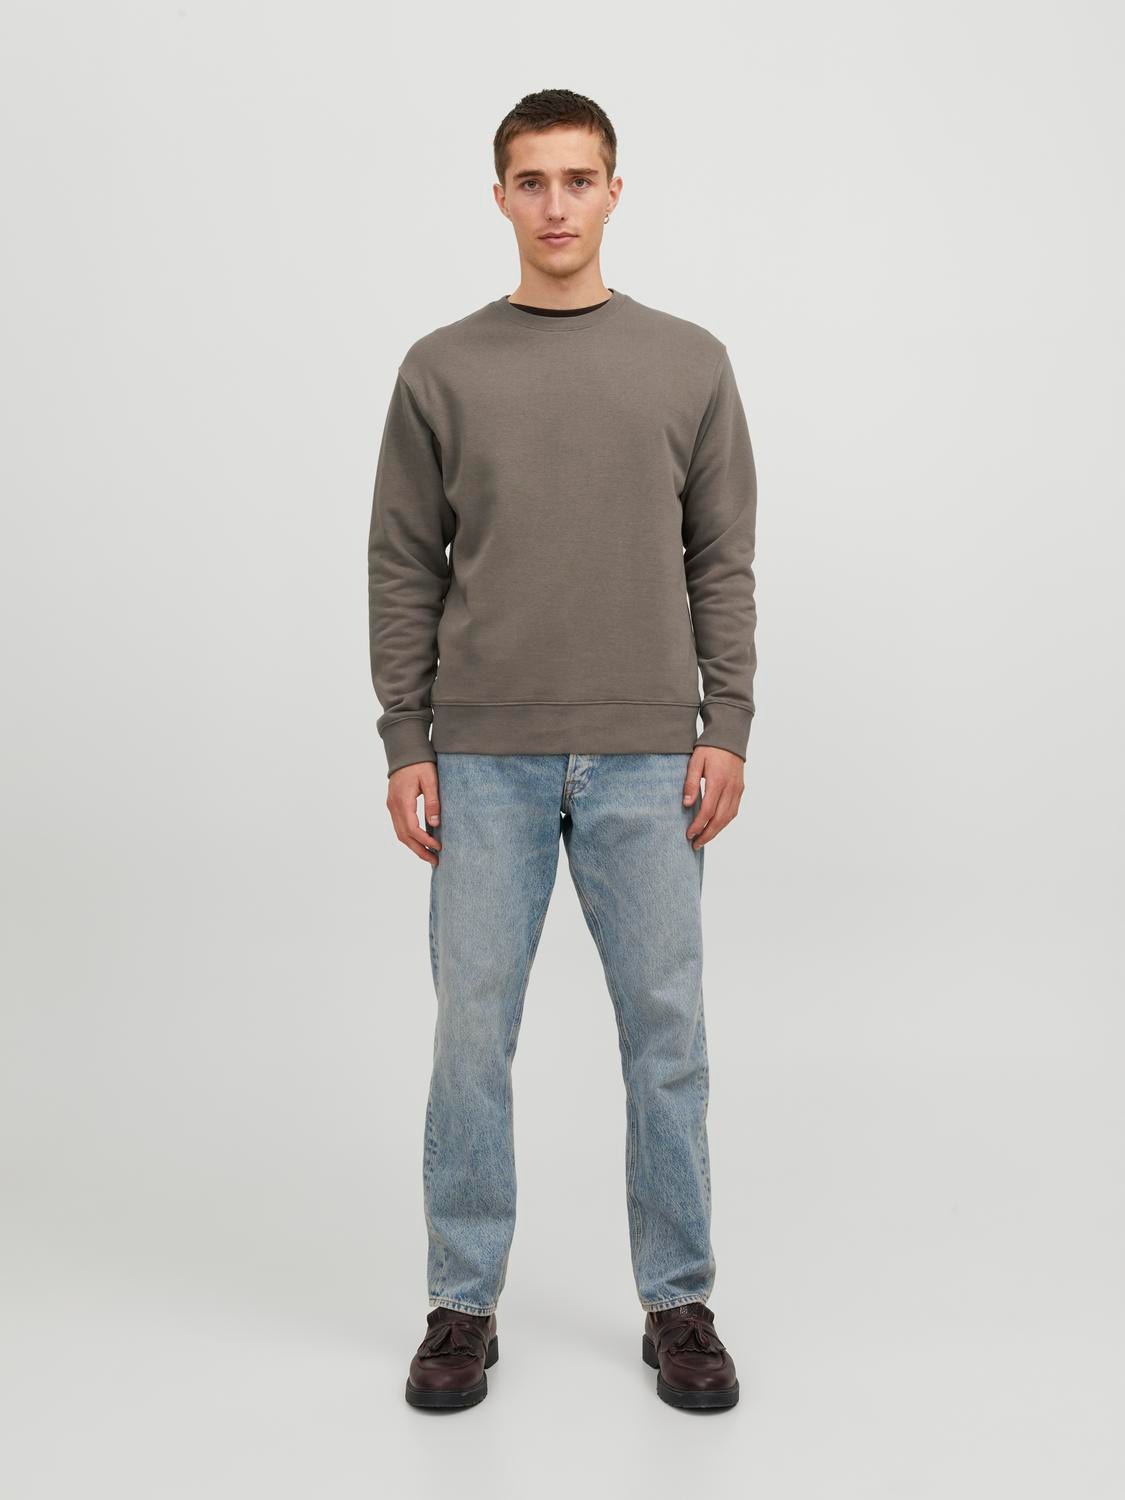 Jack & Jones Plain Crew neck Sweatshirt -Bungee Cord - 12208182